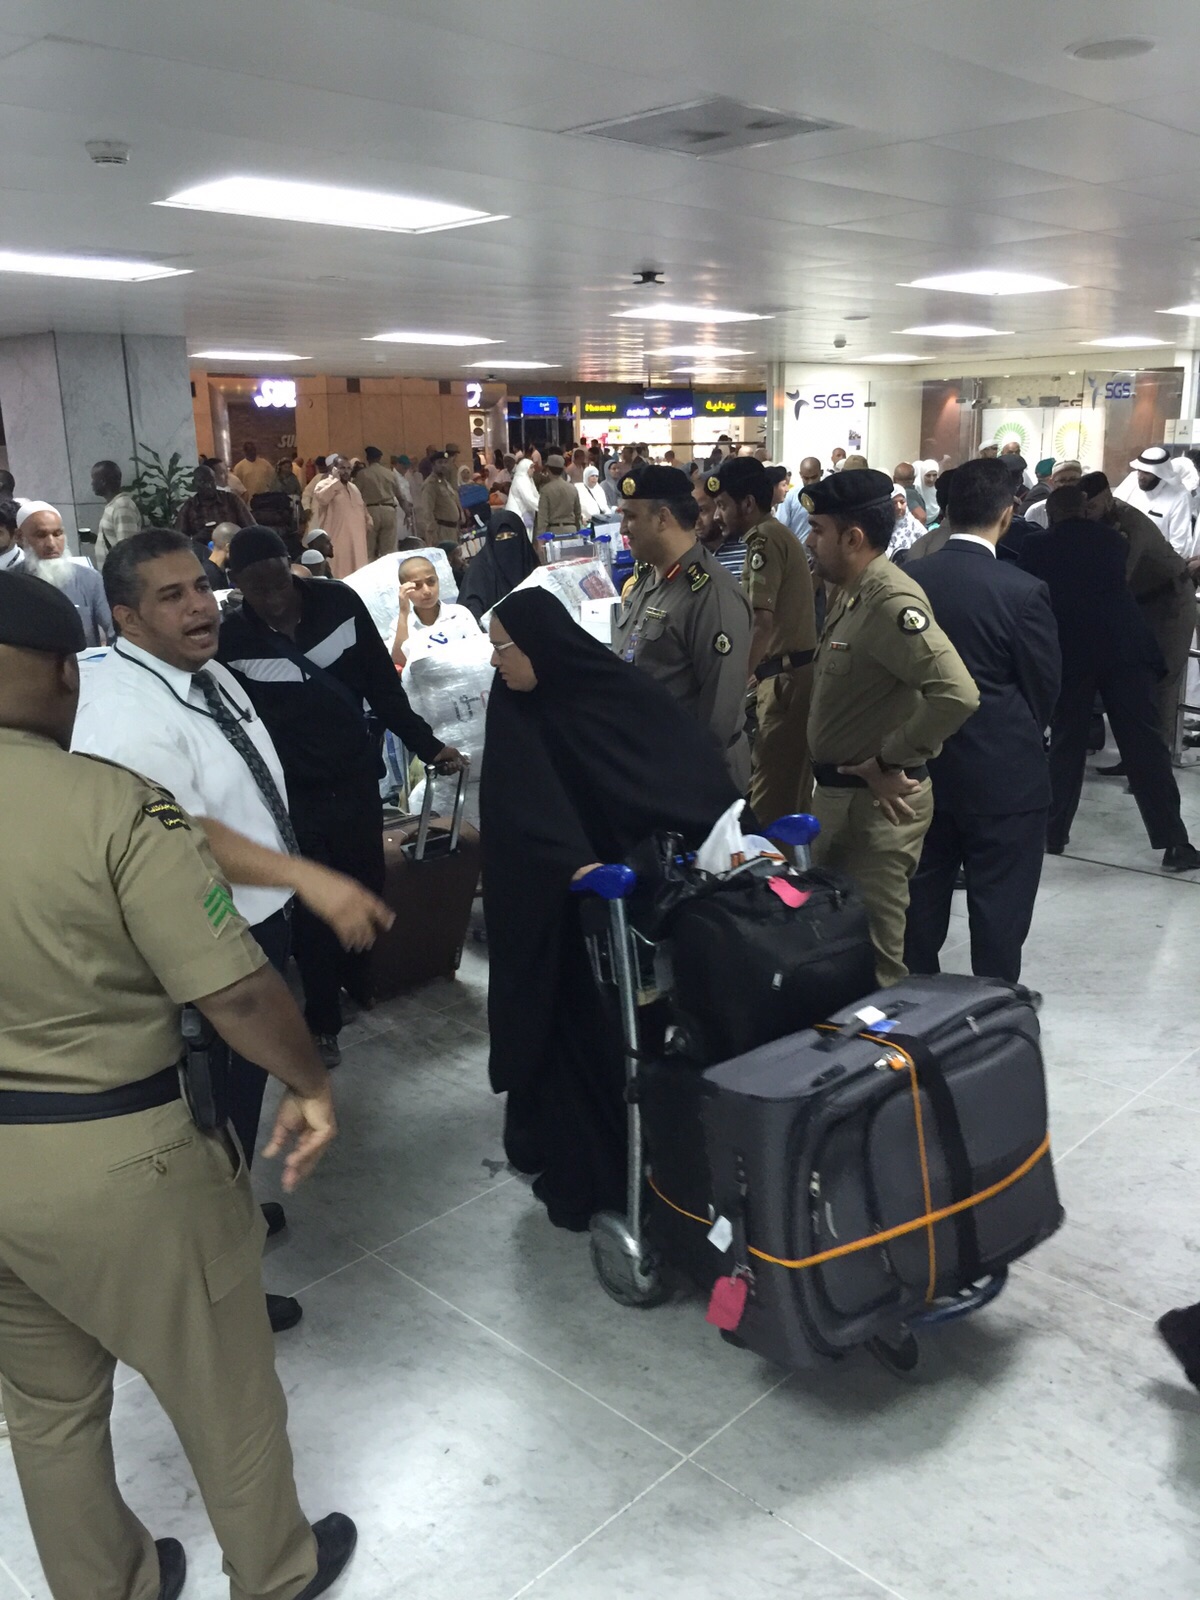 مطار #جدة: صاحب مقطع الفيديو دخل في مشادة مع موظف